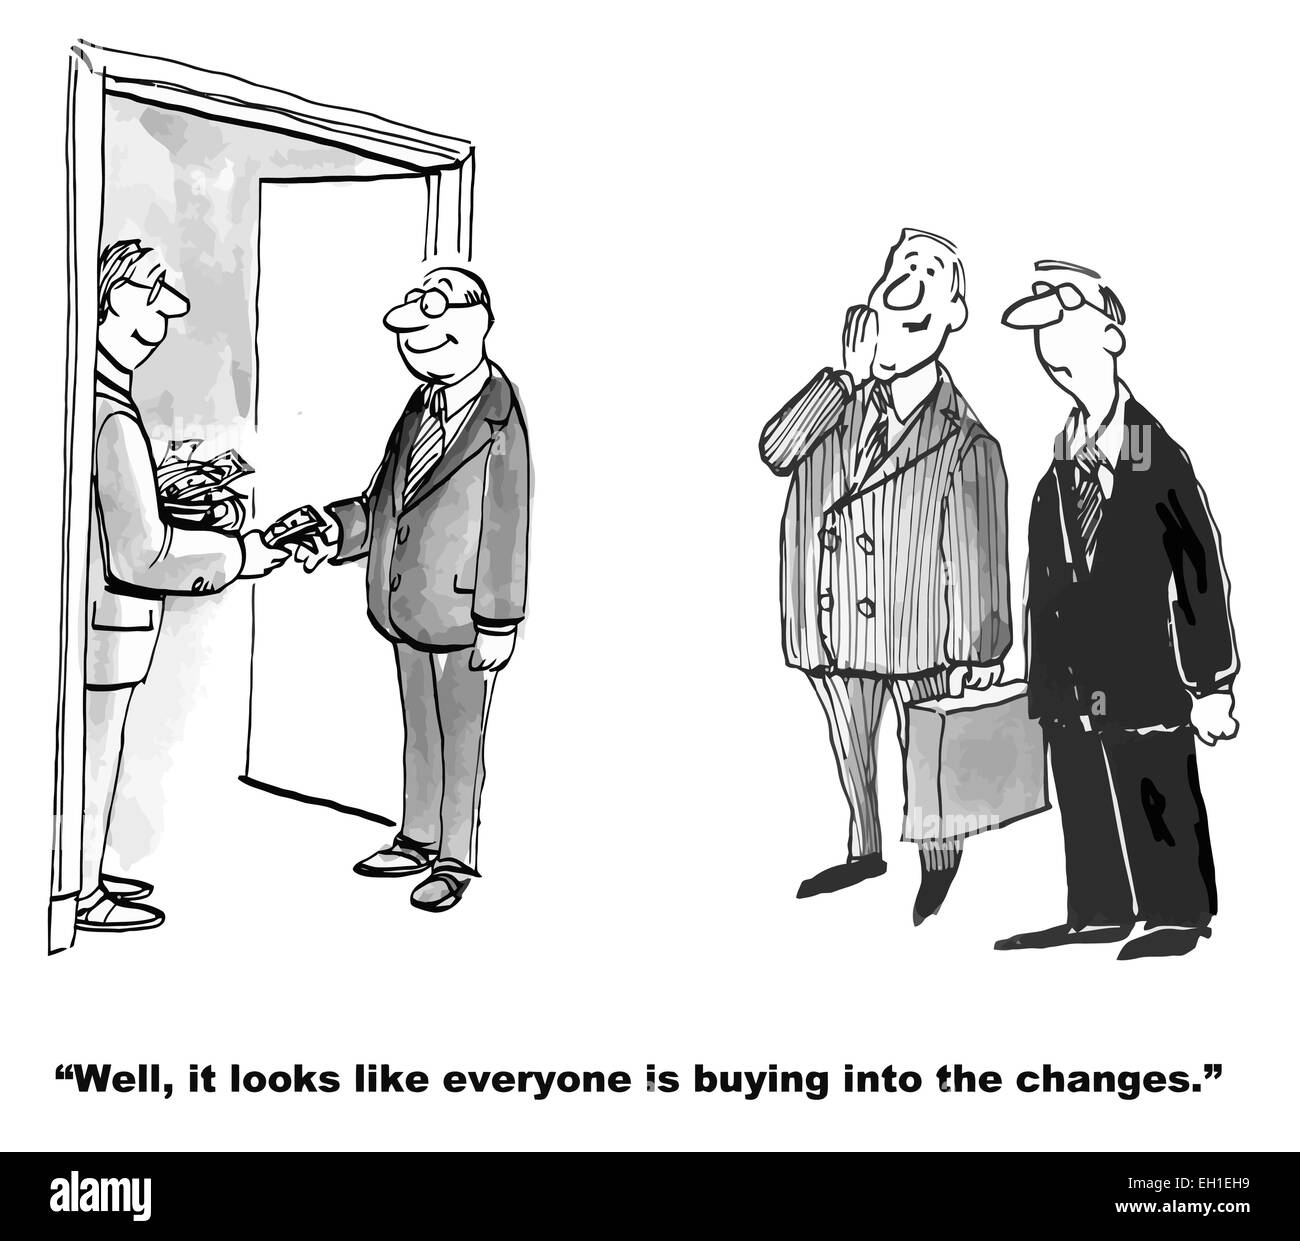 Karikatur von Unternehmen geben Geld für Mitarbeiter zu vereinbaren, um Änderungen vorzunehmen.  Unternehmens-Chef sagt: es sieht aus wie jeder kauft... Stock Vektor